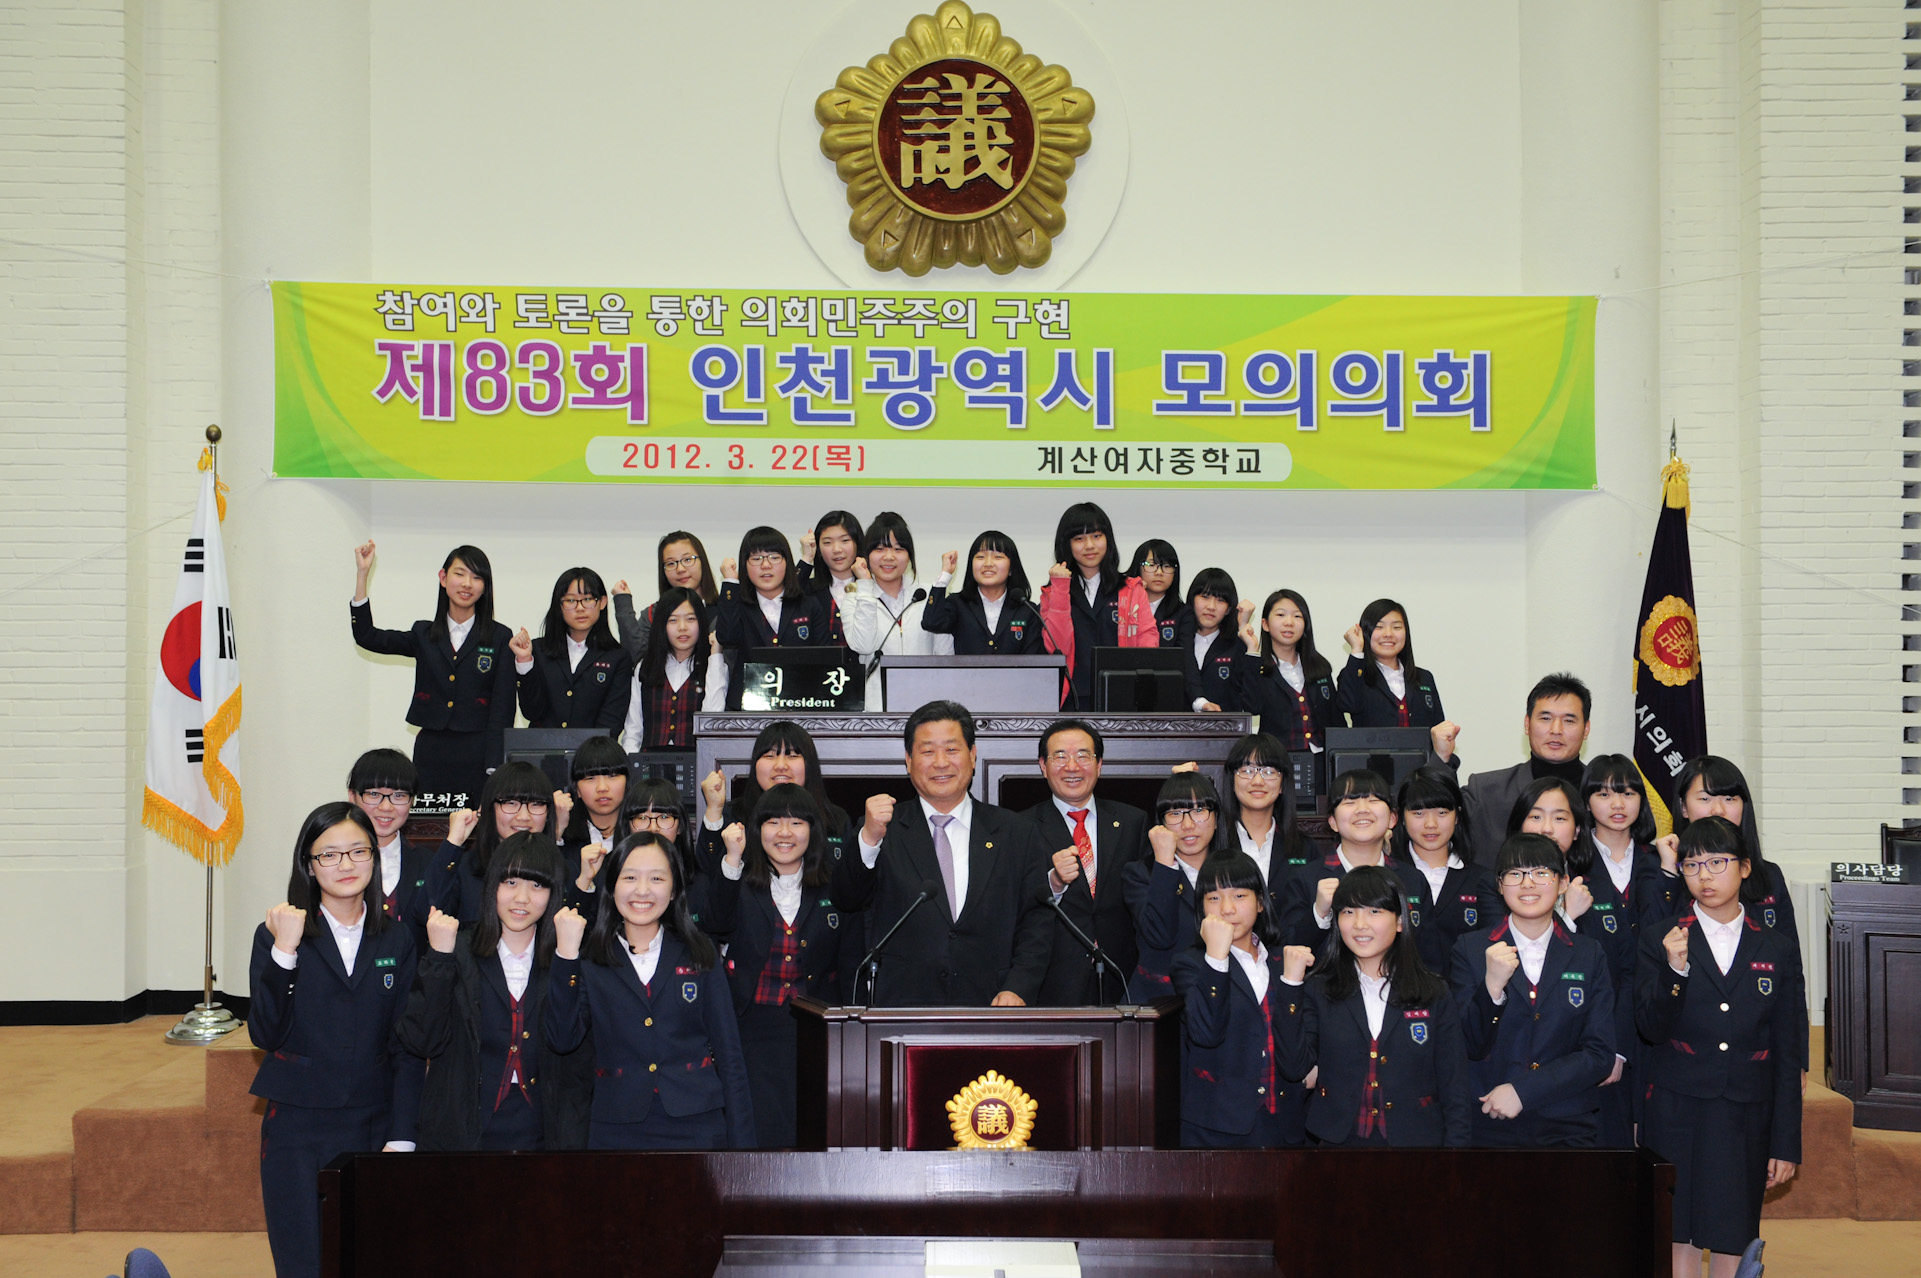 인천광역시의회(의장·류수용)는 지난 22일 계산여자중학교 학생 35명을 대상으로 제83회 인천광역시 모의의회를 개최했다. 사진